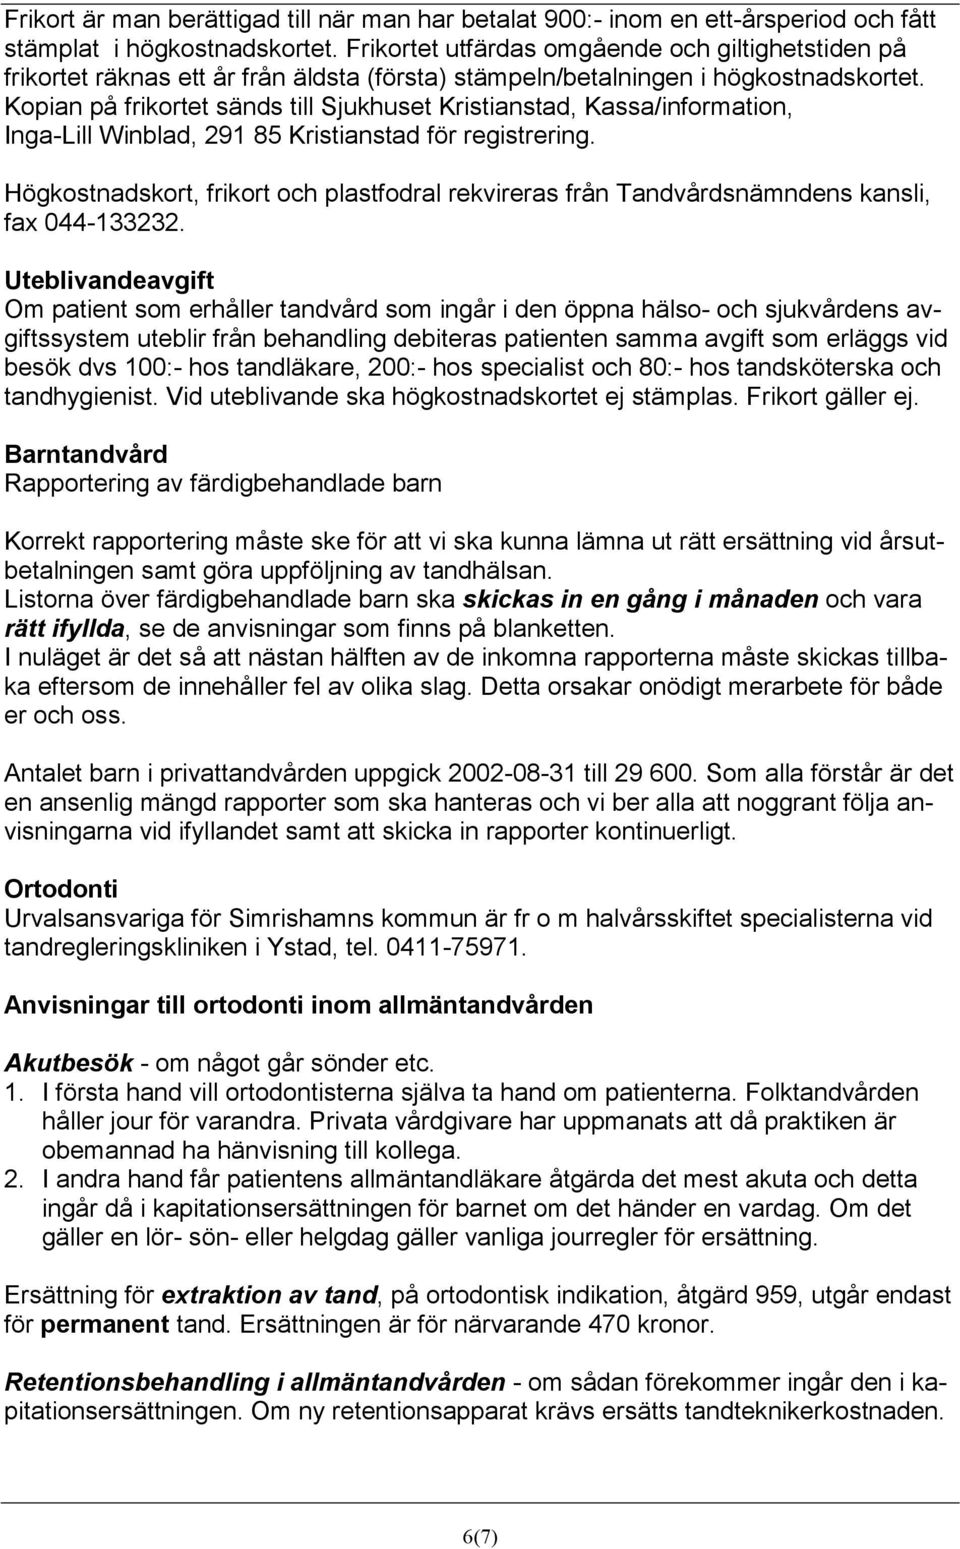 Kopian på frikortet sänds till Sjukhuset Kristianstad, Kassa/information, Inga-Lill Winblad, 291 85 Kristianstad för registrering.